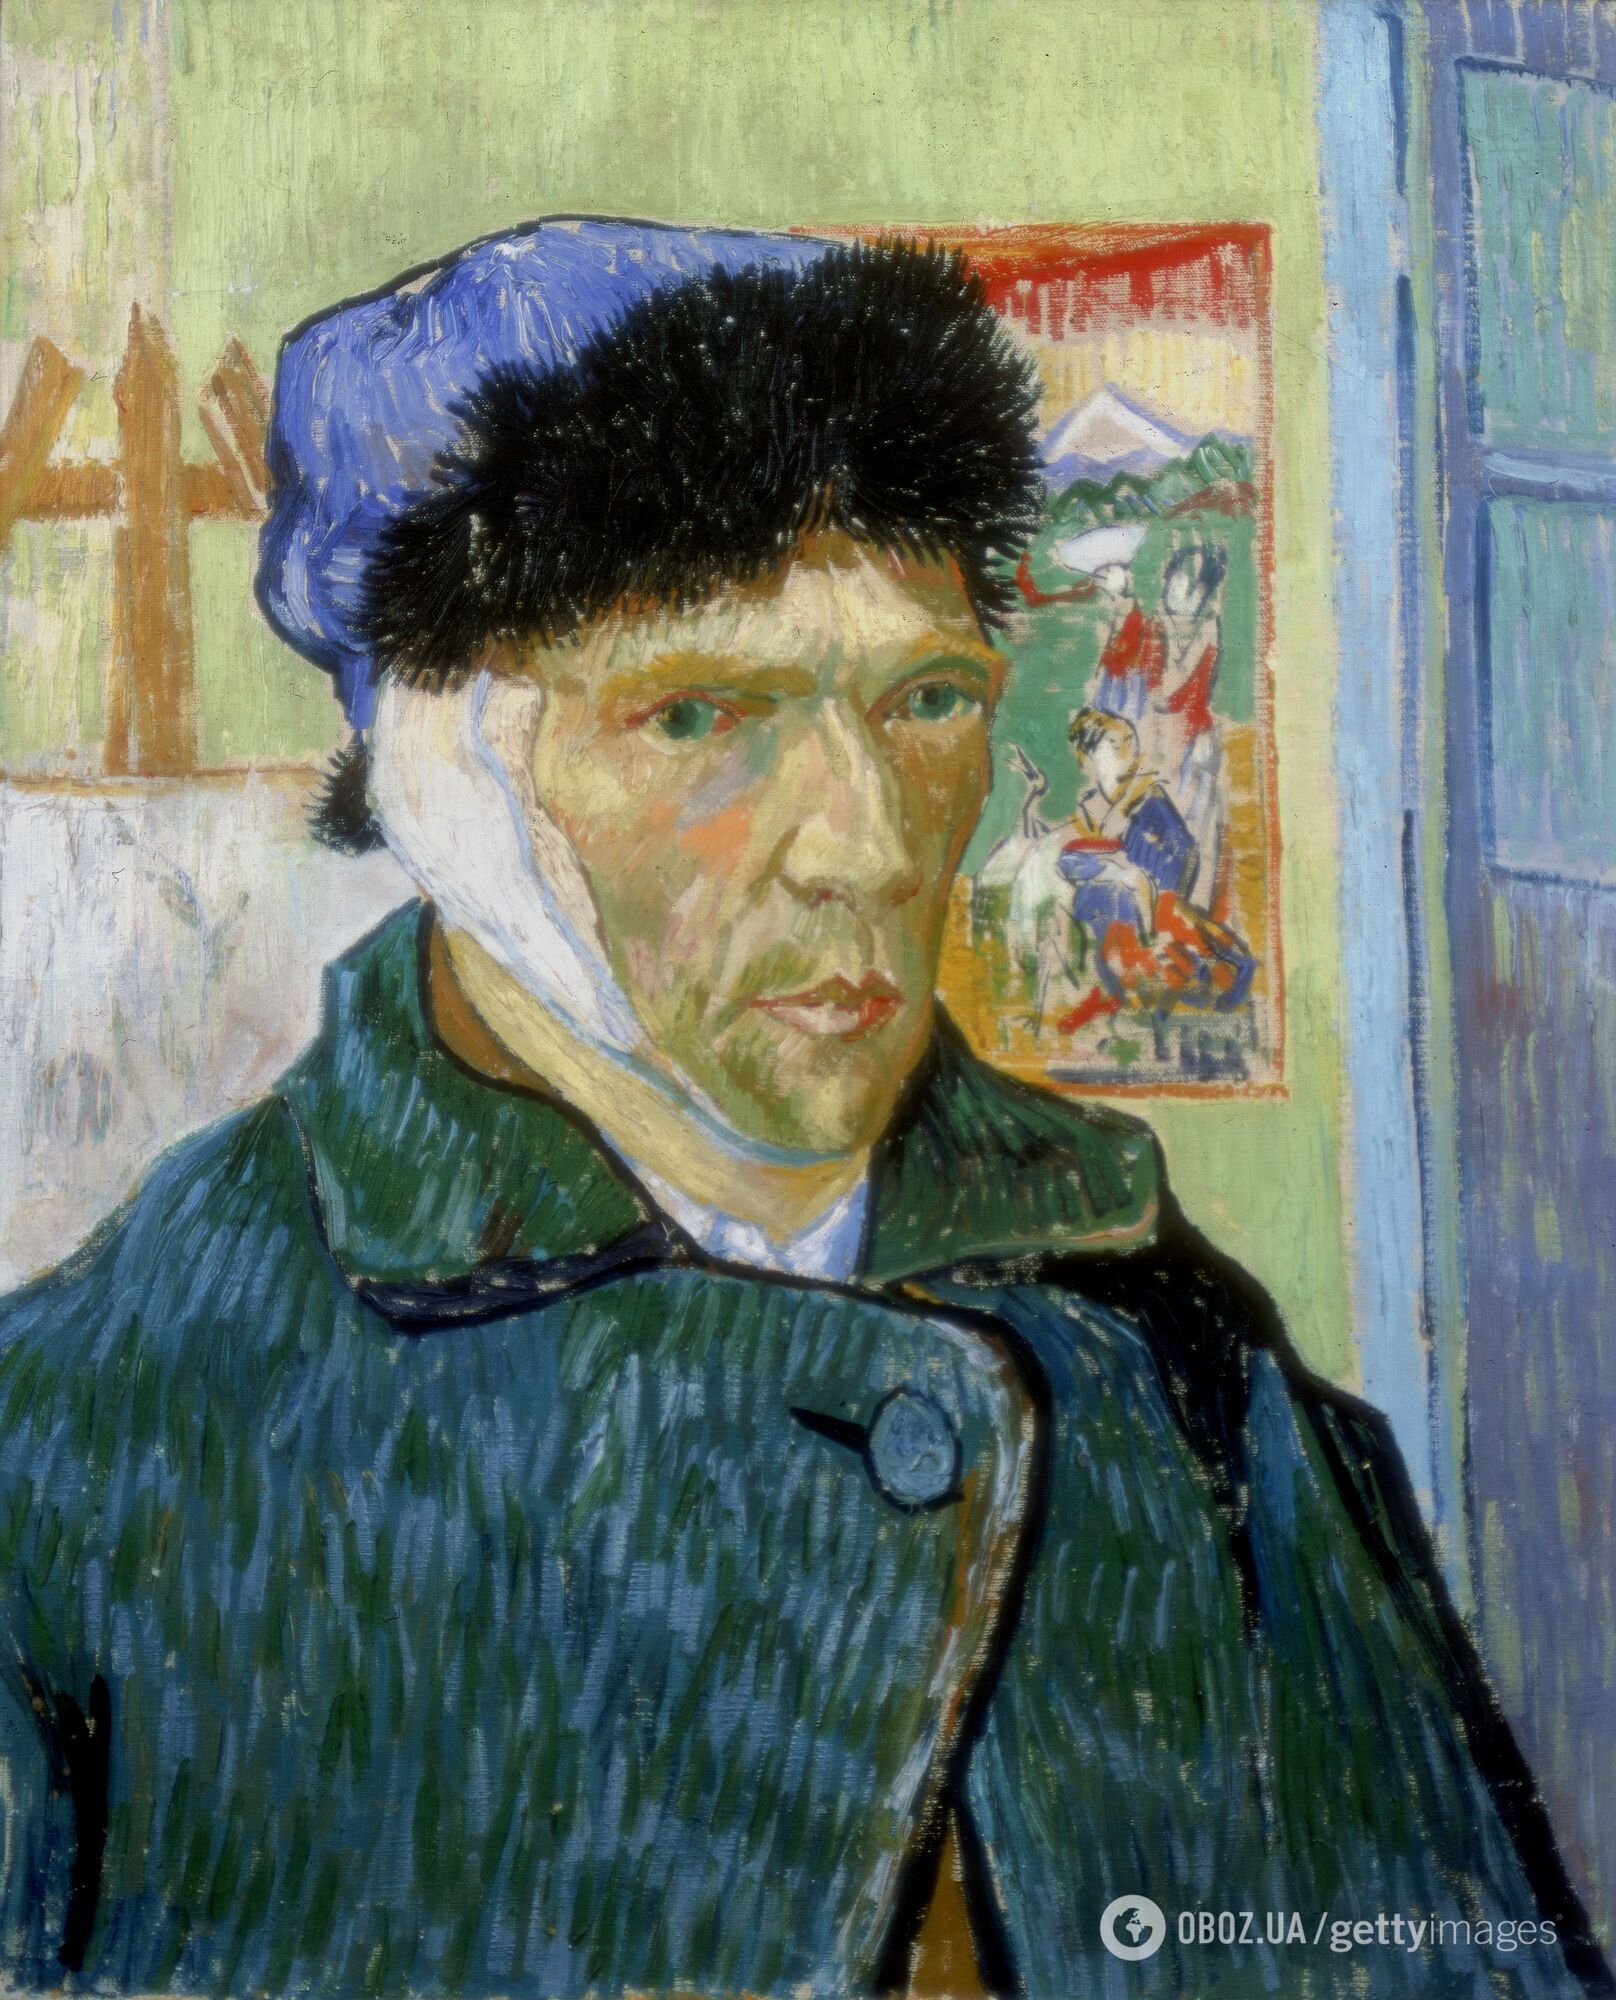 Не отрезал себе все ухо и имел роман с беременной куртизанкой. 7 интересных фактов о легендарном художнике Винсенте ван Гоге